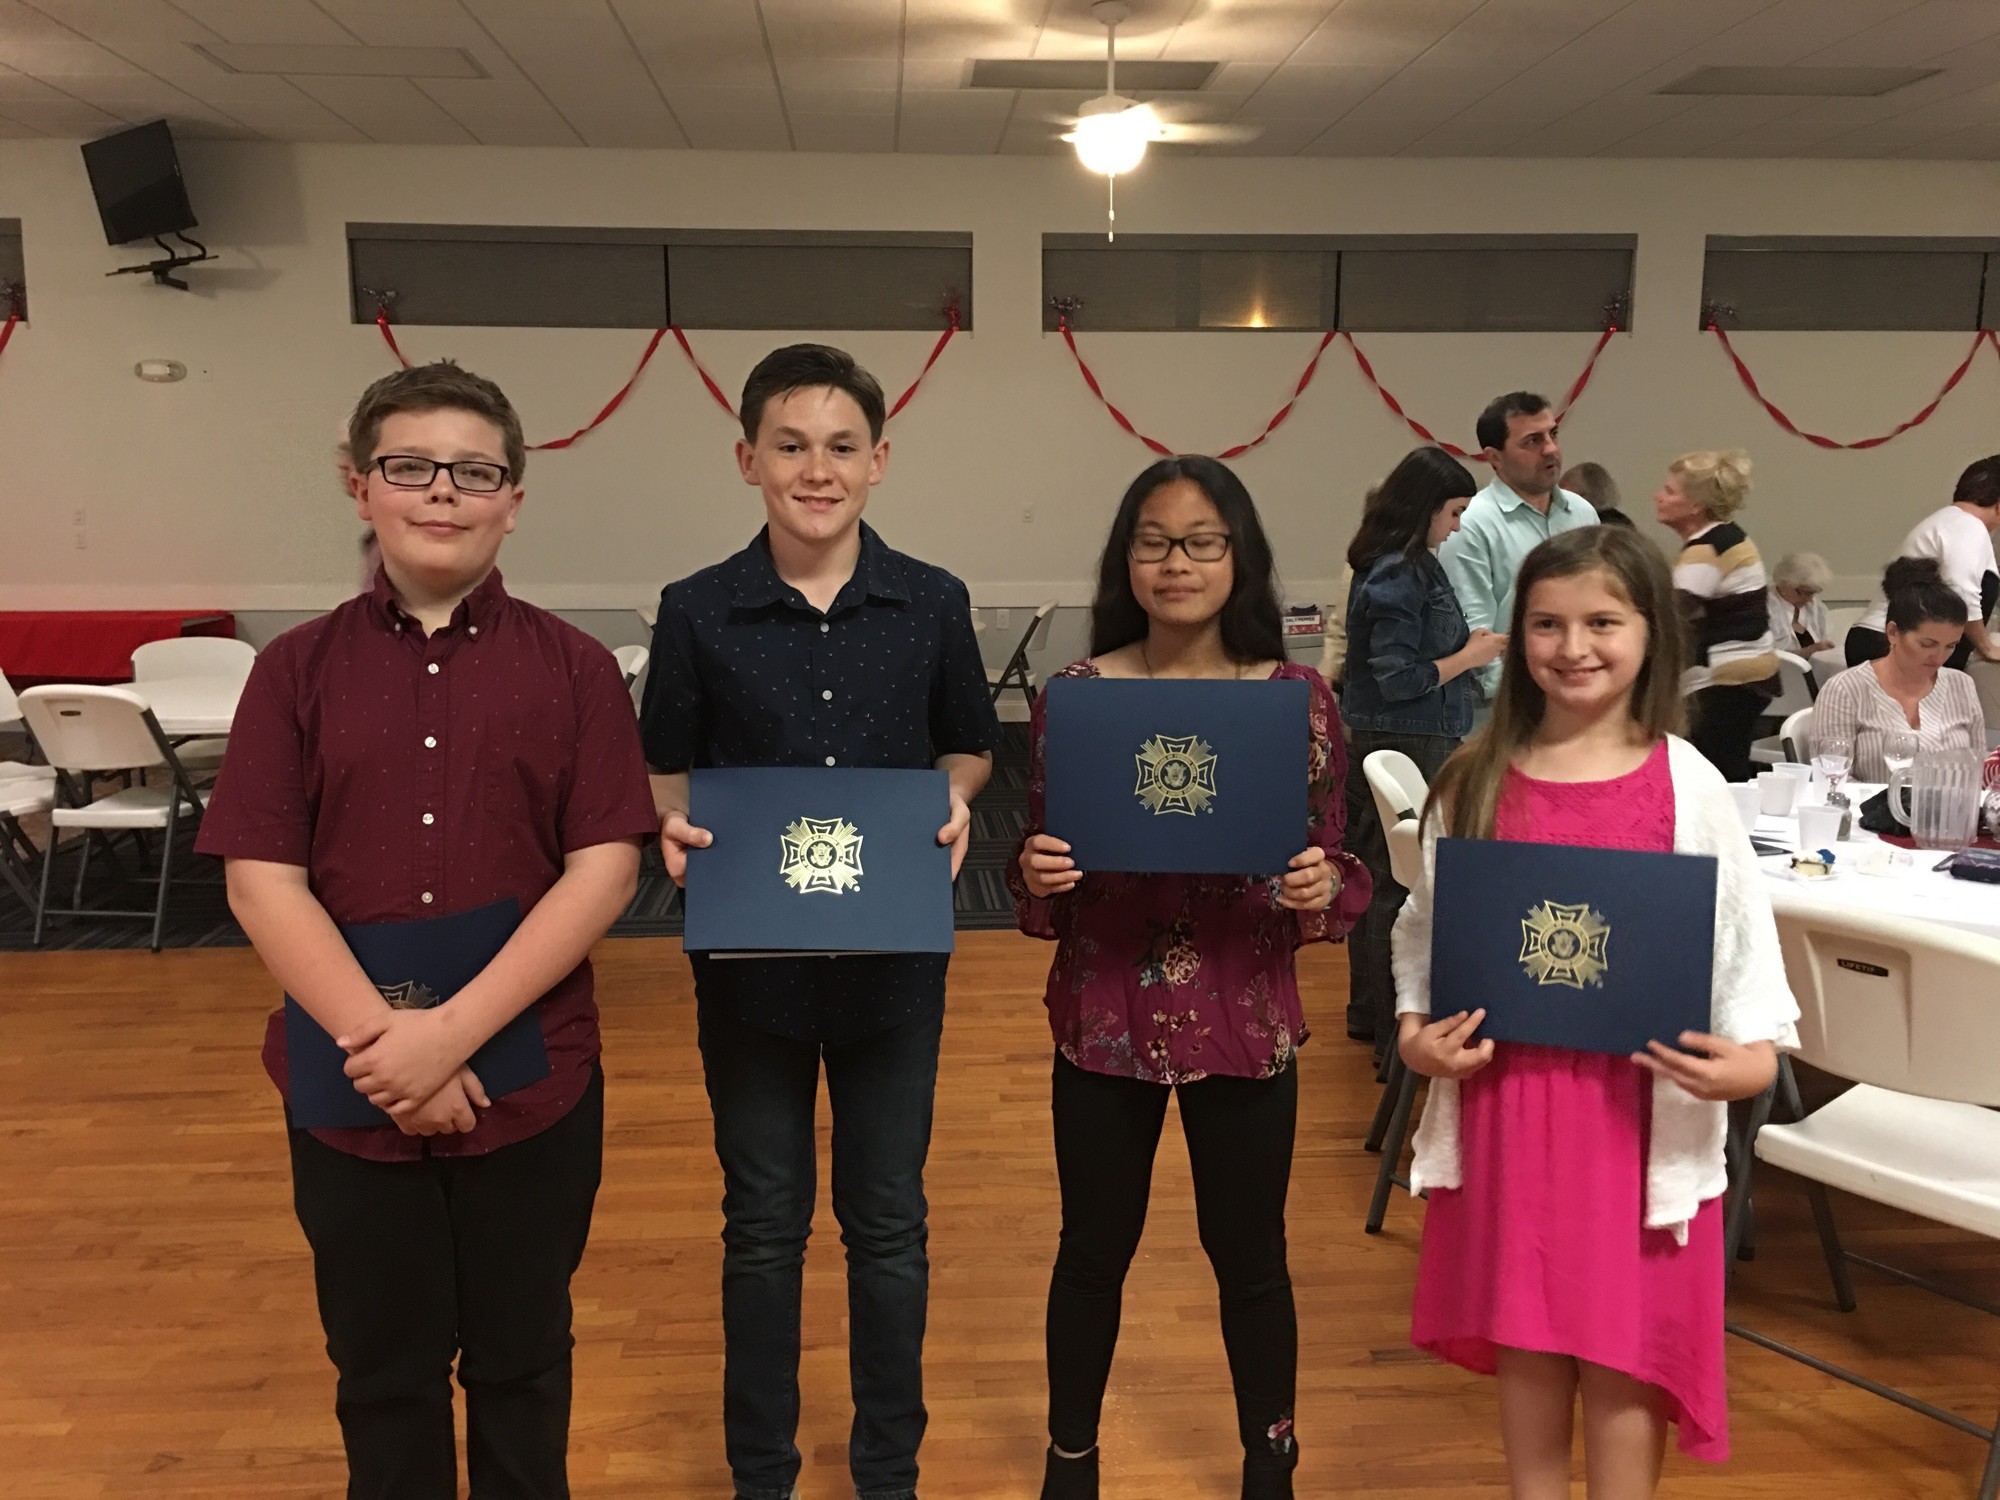 Jack Starrett, seventh grade; Carter Jensen, eighth grade; Mary Joyce Thomas, seventh grade; Katherine Thomas, sixth grade. Photo courtesy of FBCA